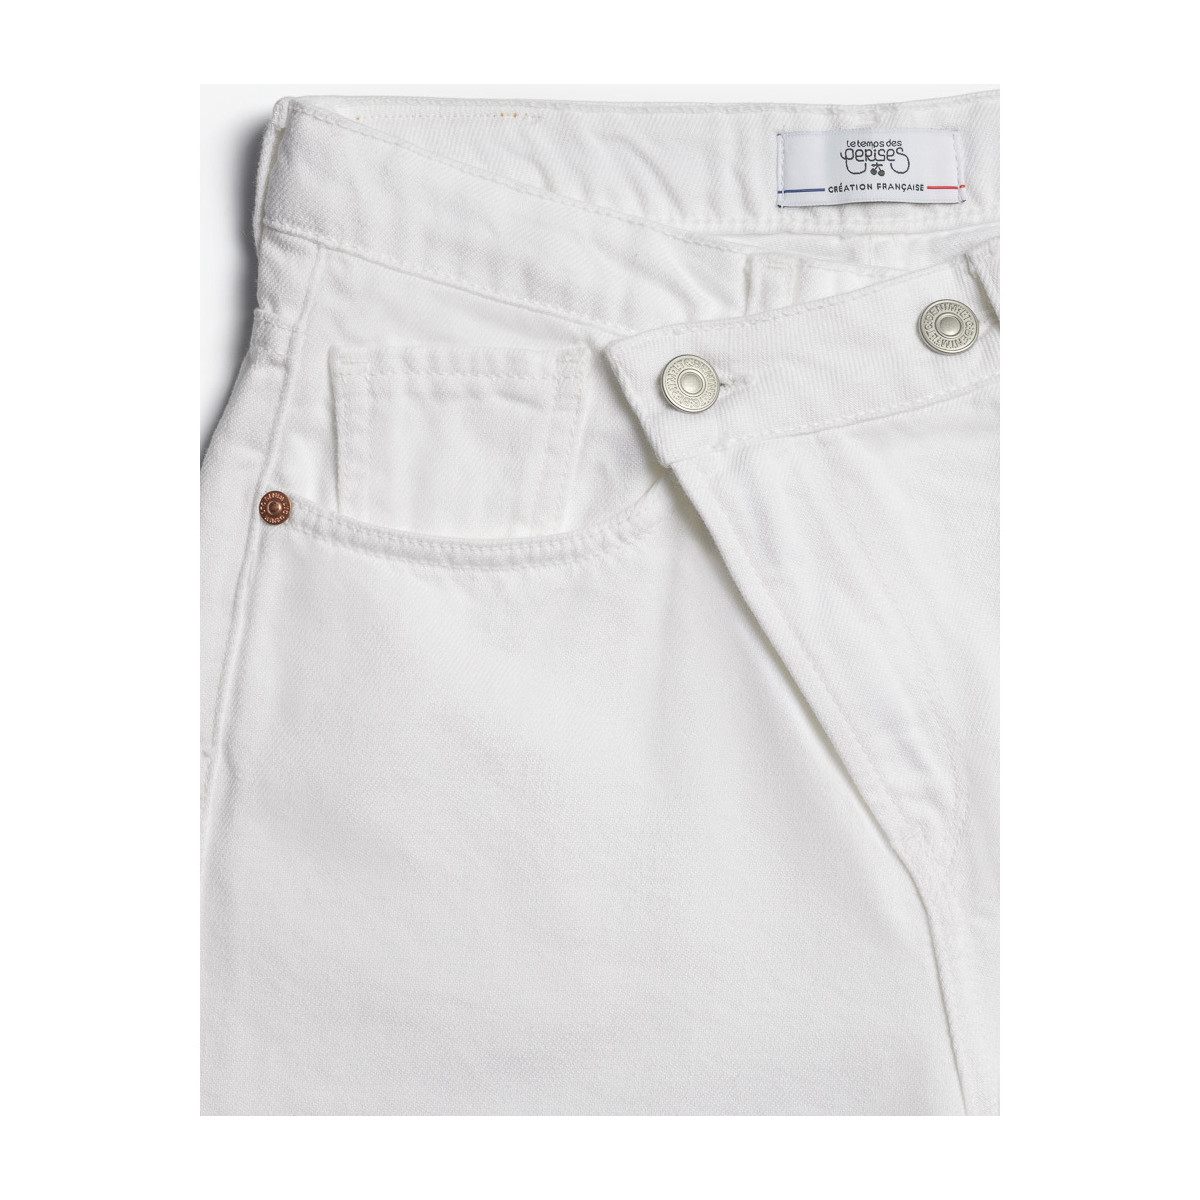 Le Temps des Cerises Blanc Cosa boyfit 7/8ème jeans blanc jWaBftfx